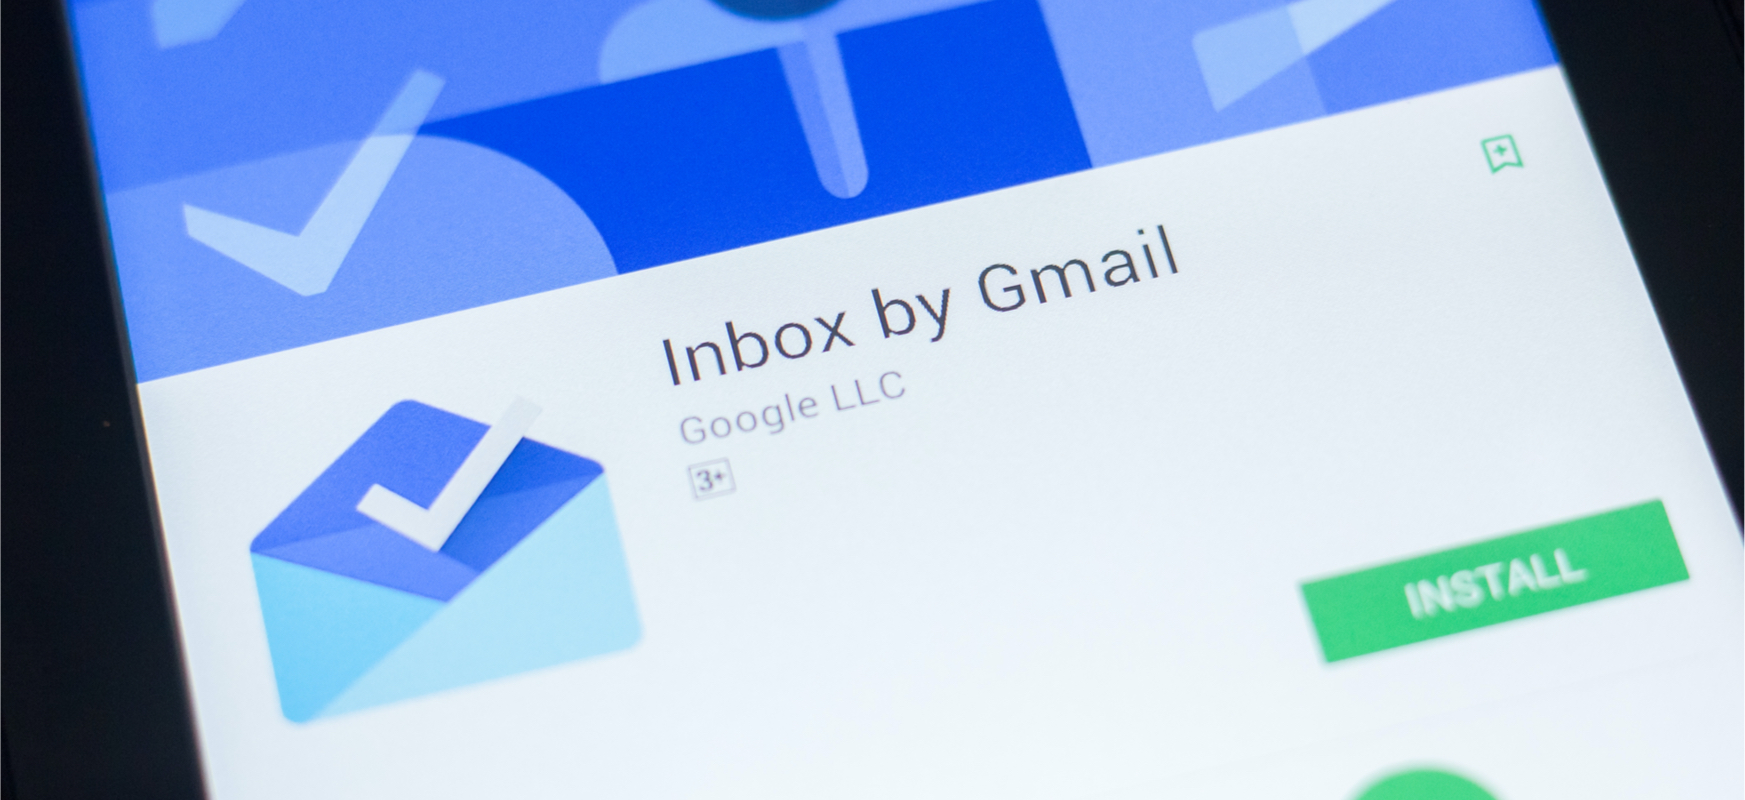 Gaur egun, Gmail-ek Inbox-etik urrun dago. Google-ren posta elektronikoaren ondoren, inork ez du bete behar izan duen hutsunea